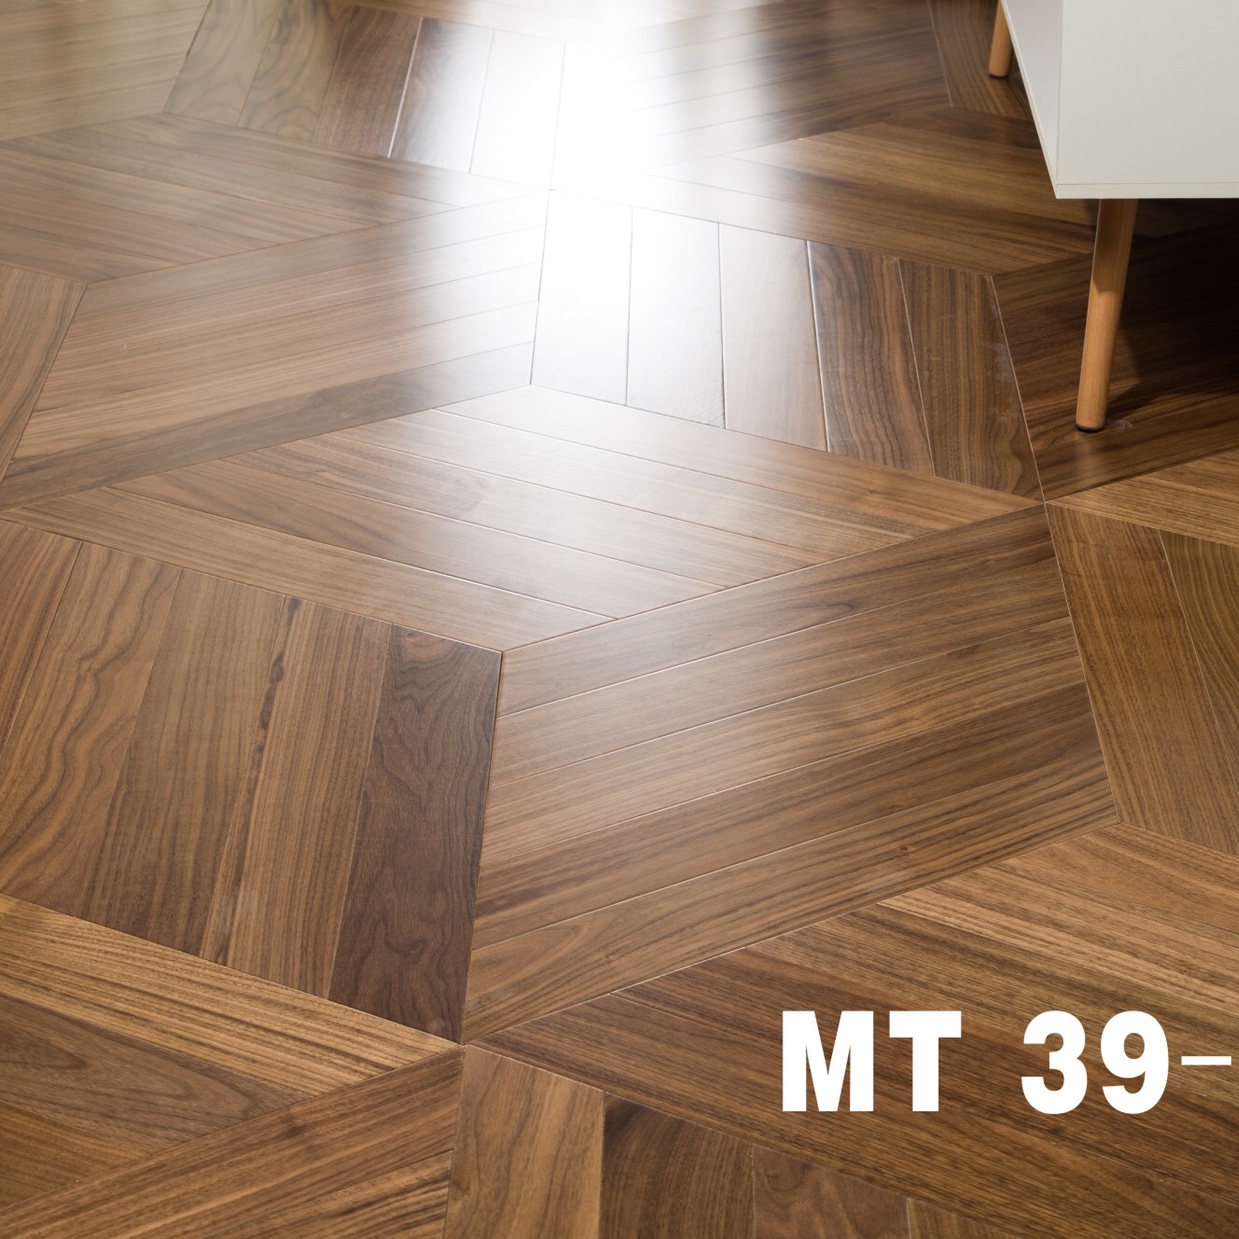 六边黑胡桃mt39-1北欧美式风格大自然原木色客厅卧室家用原木实木地板强化复合木地板